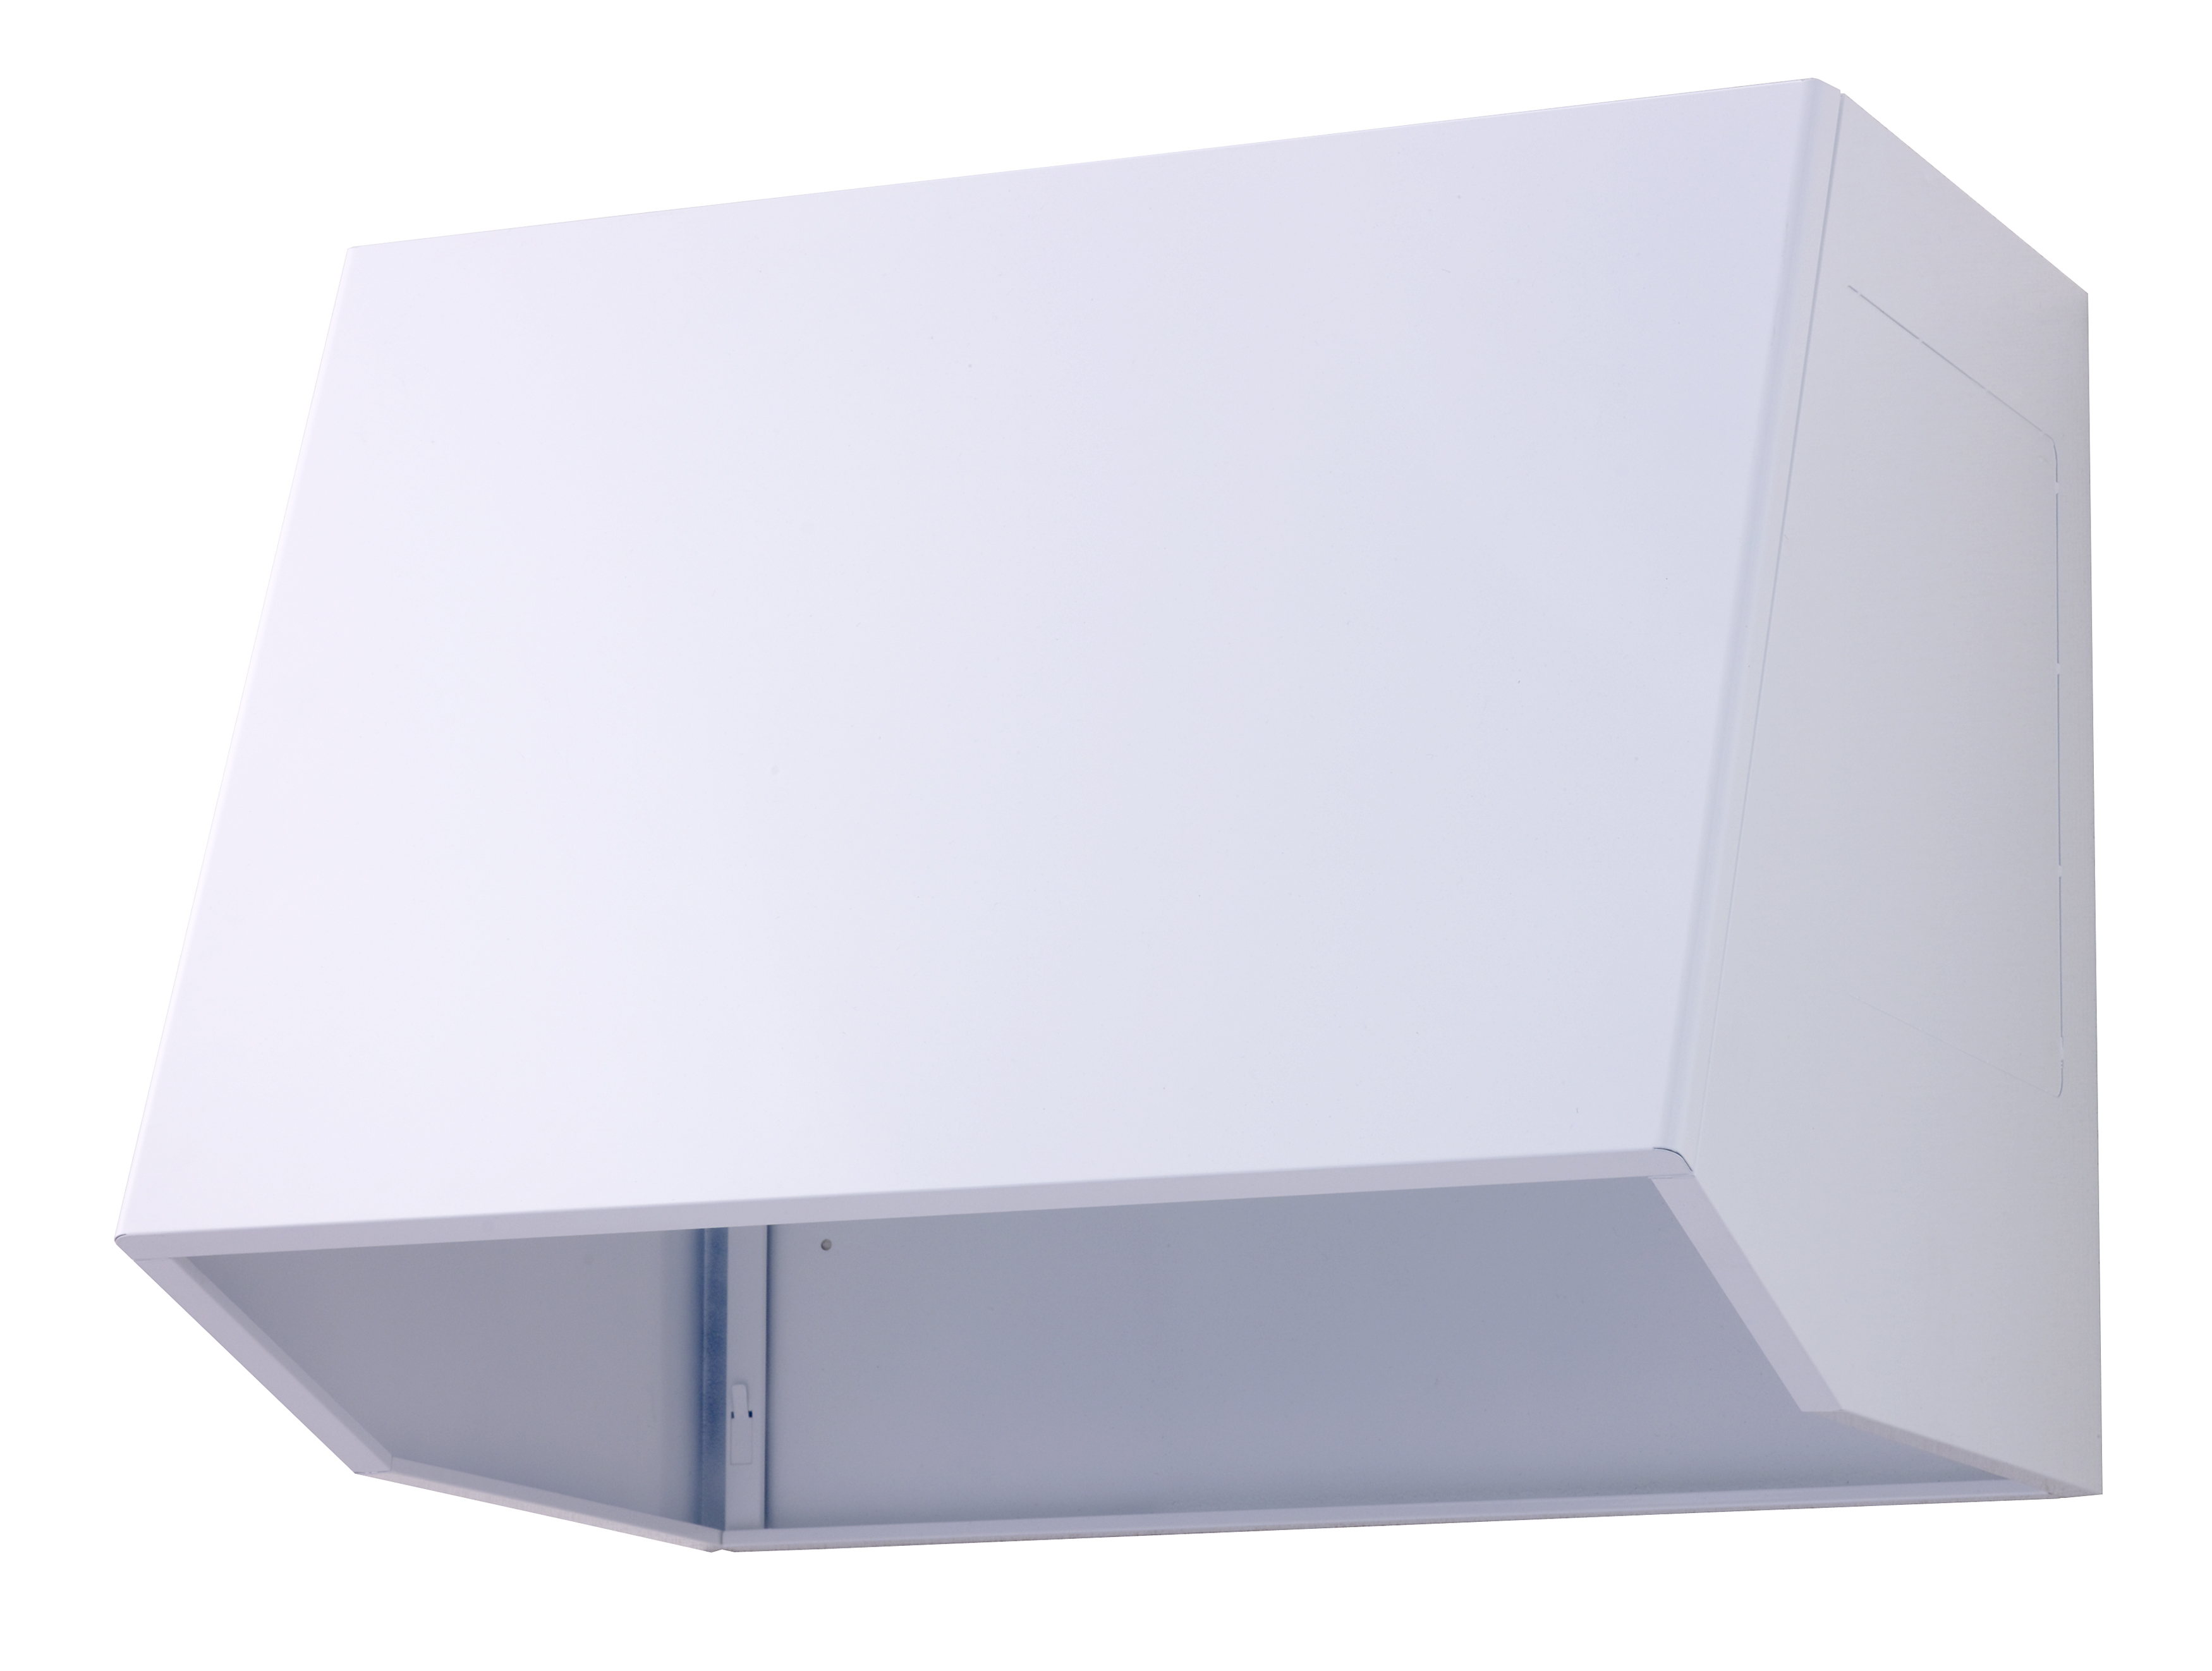 レンジフード<br>幅600mm 組立式フードボックス（レンジフード）浴室換気乾燥機をはじめとした換気扇メーカー 高須産業株式会社